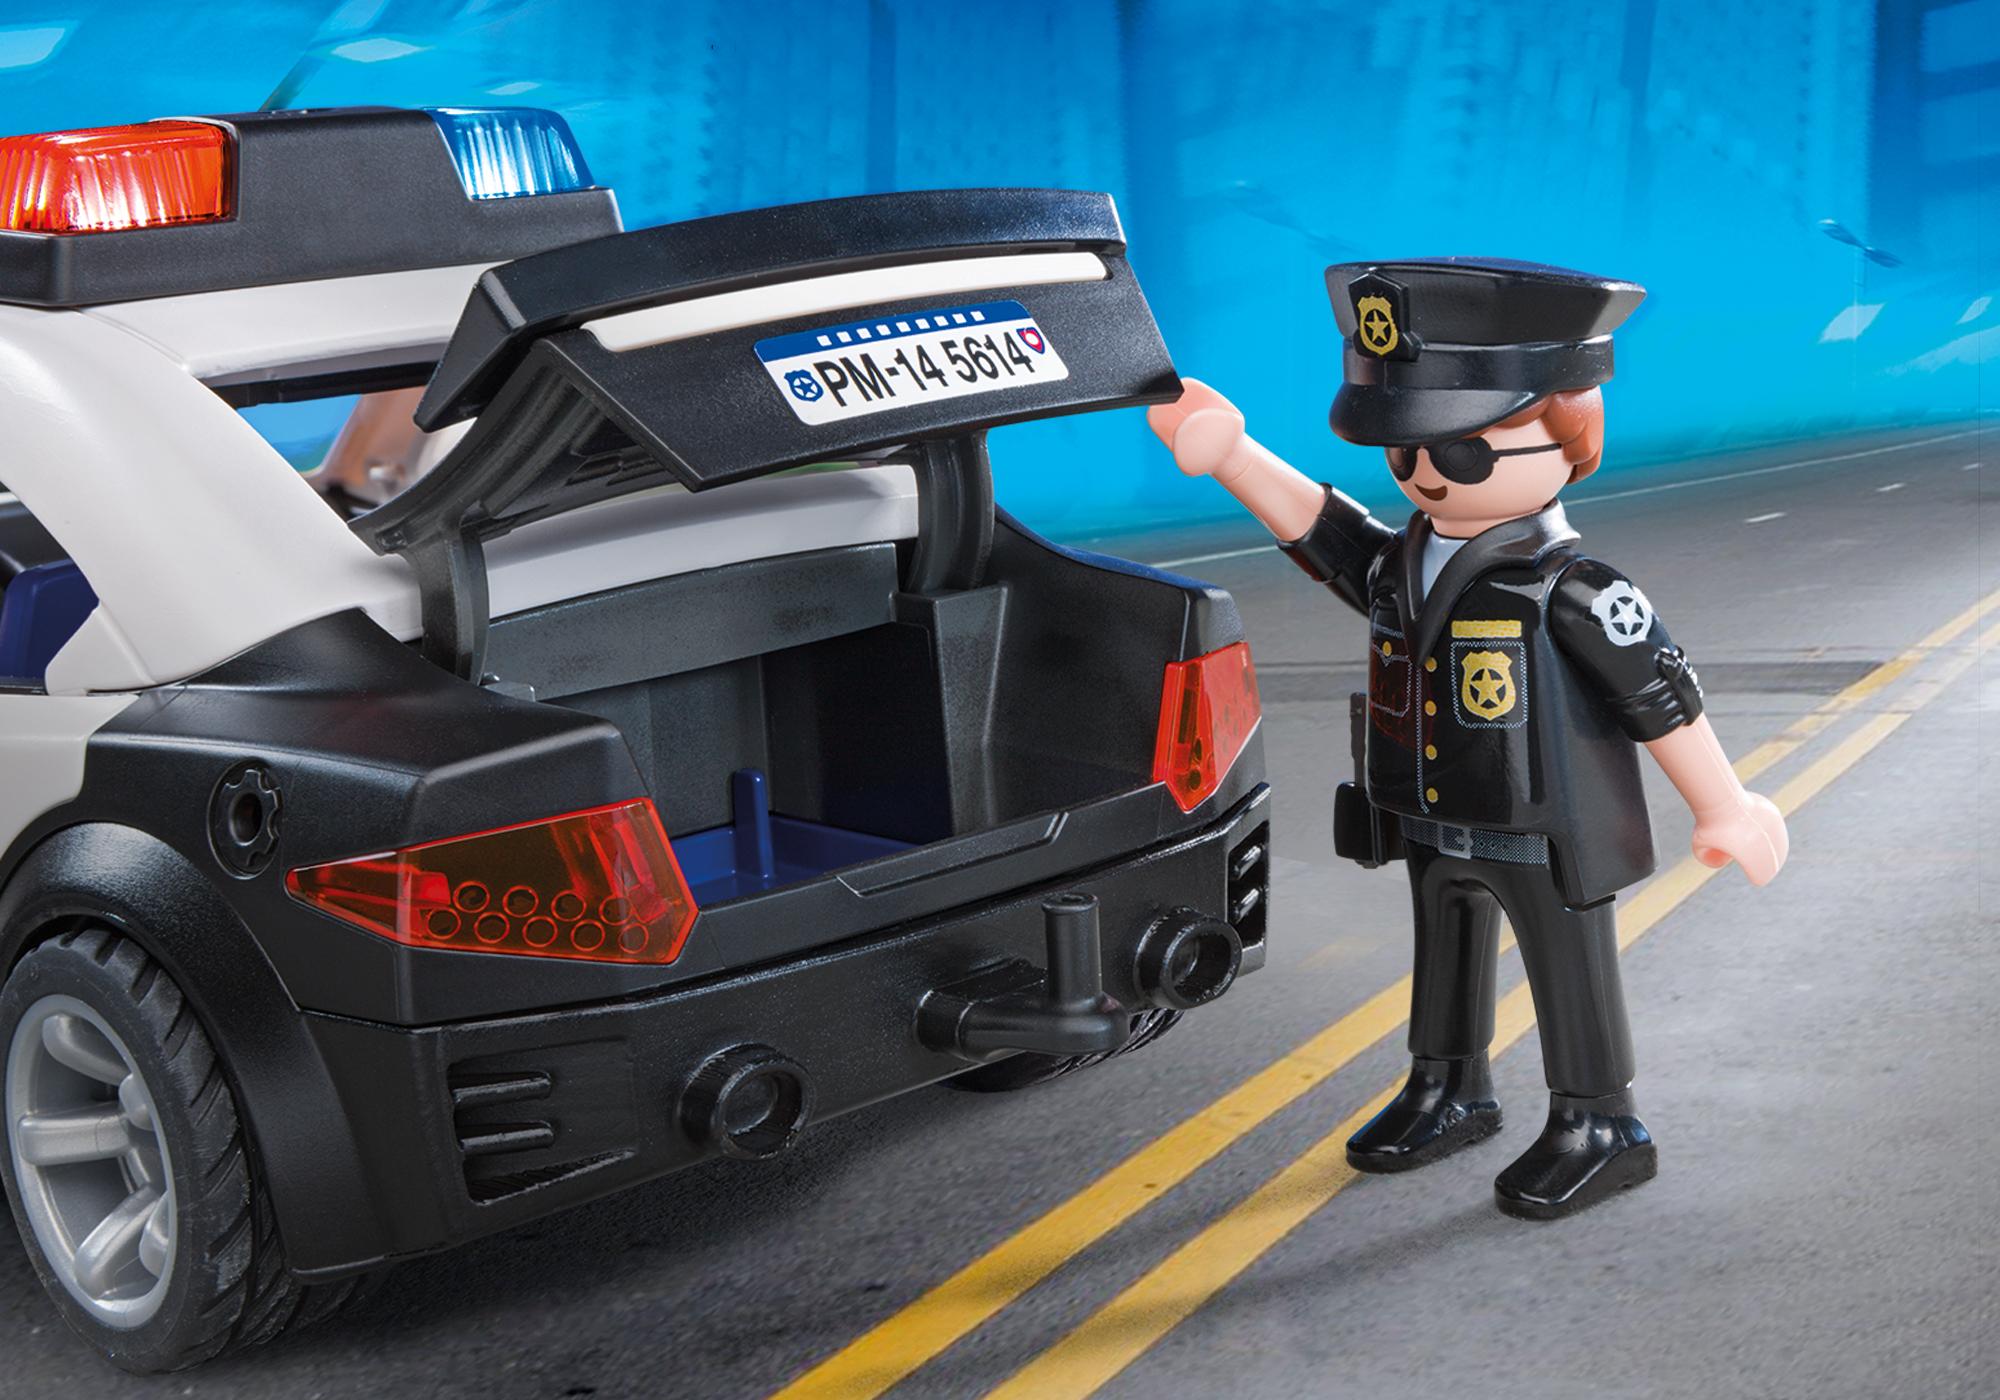 Игрушка полицейская купить. Плеймобил полиция 5673. Playmobil City Action Police car 5673. Плеймобил полицейский автомобиль 5673. Полицейская машина Playmobil 6920.